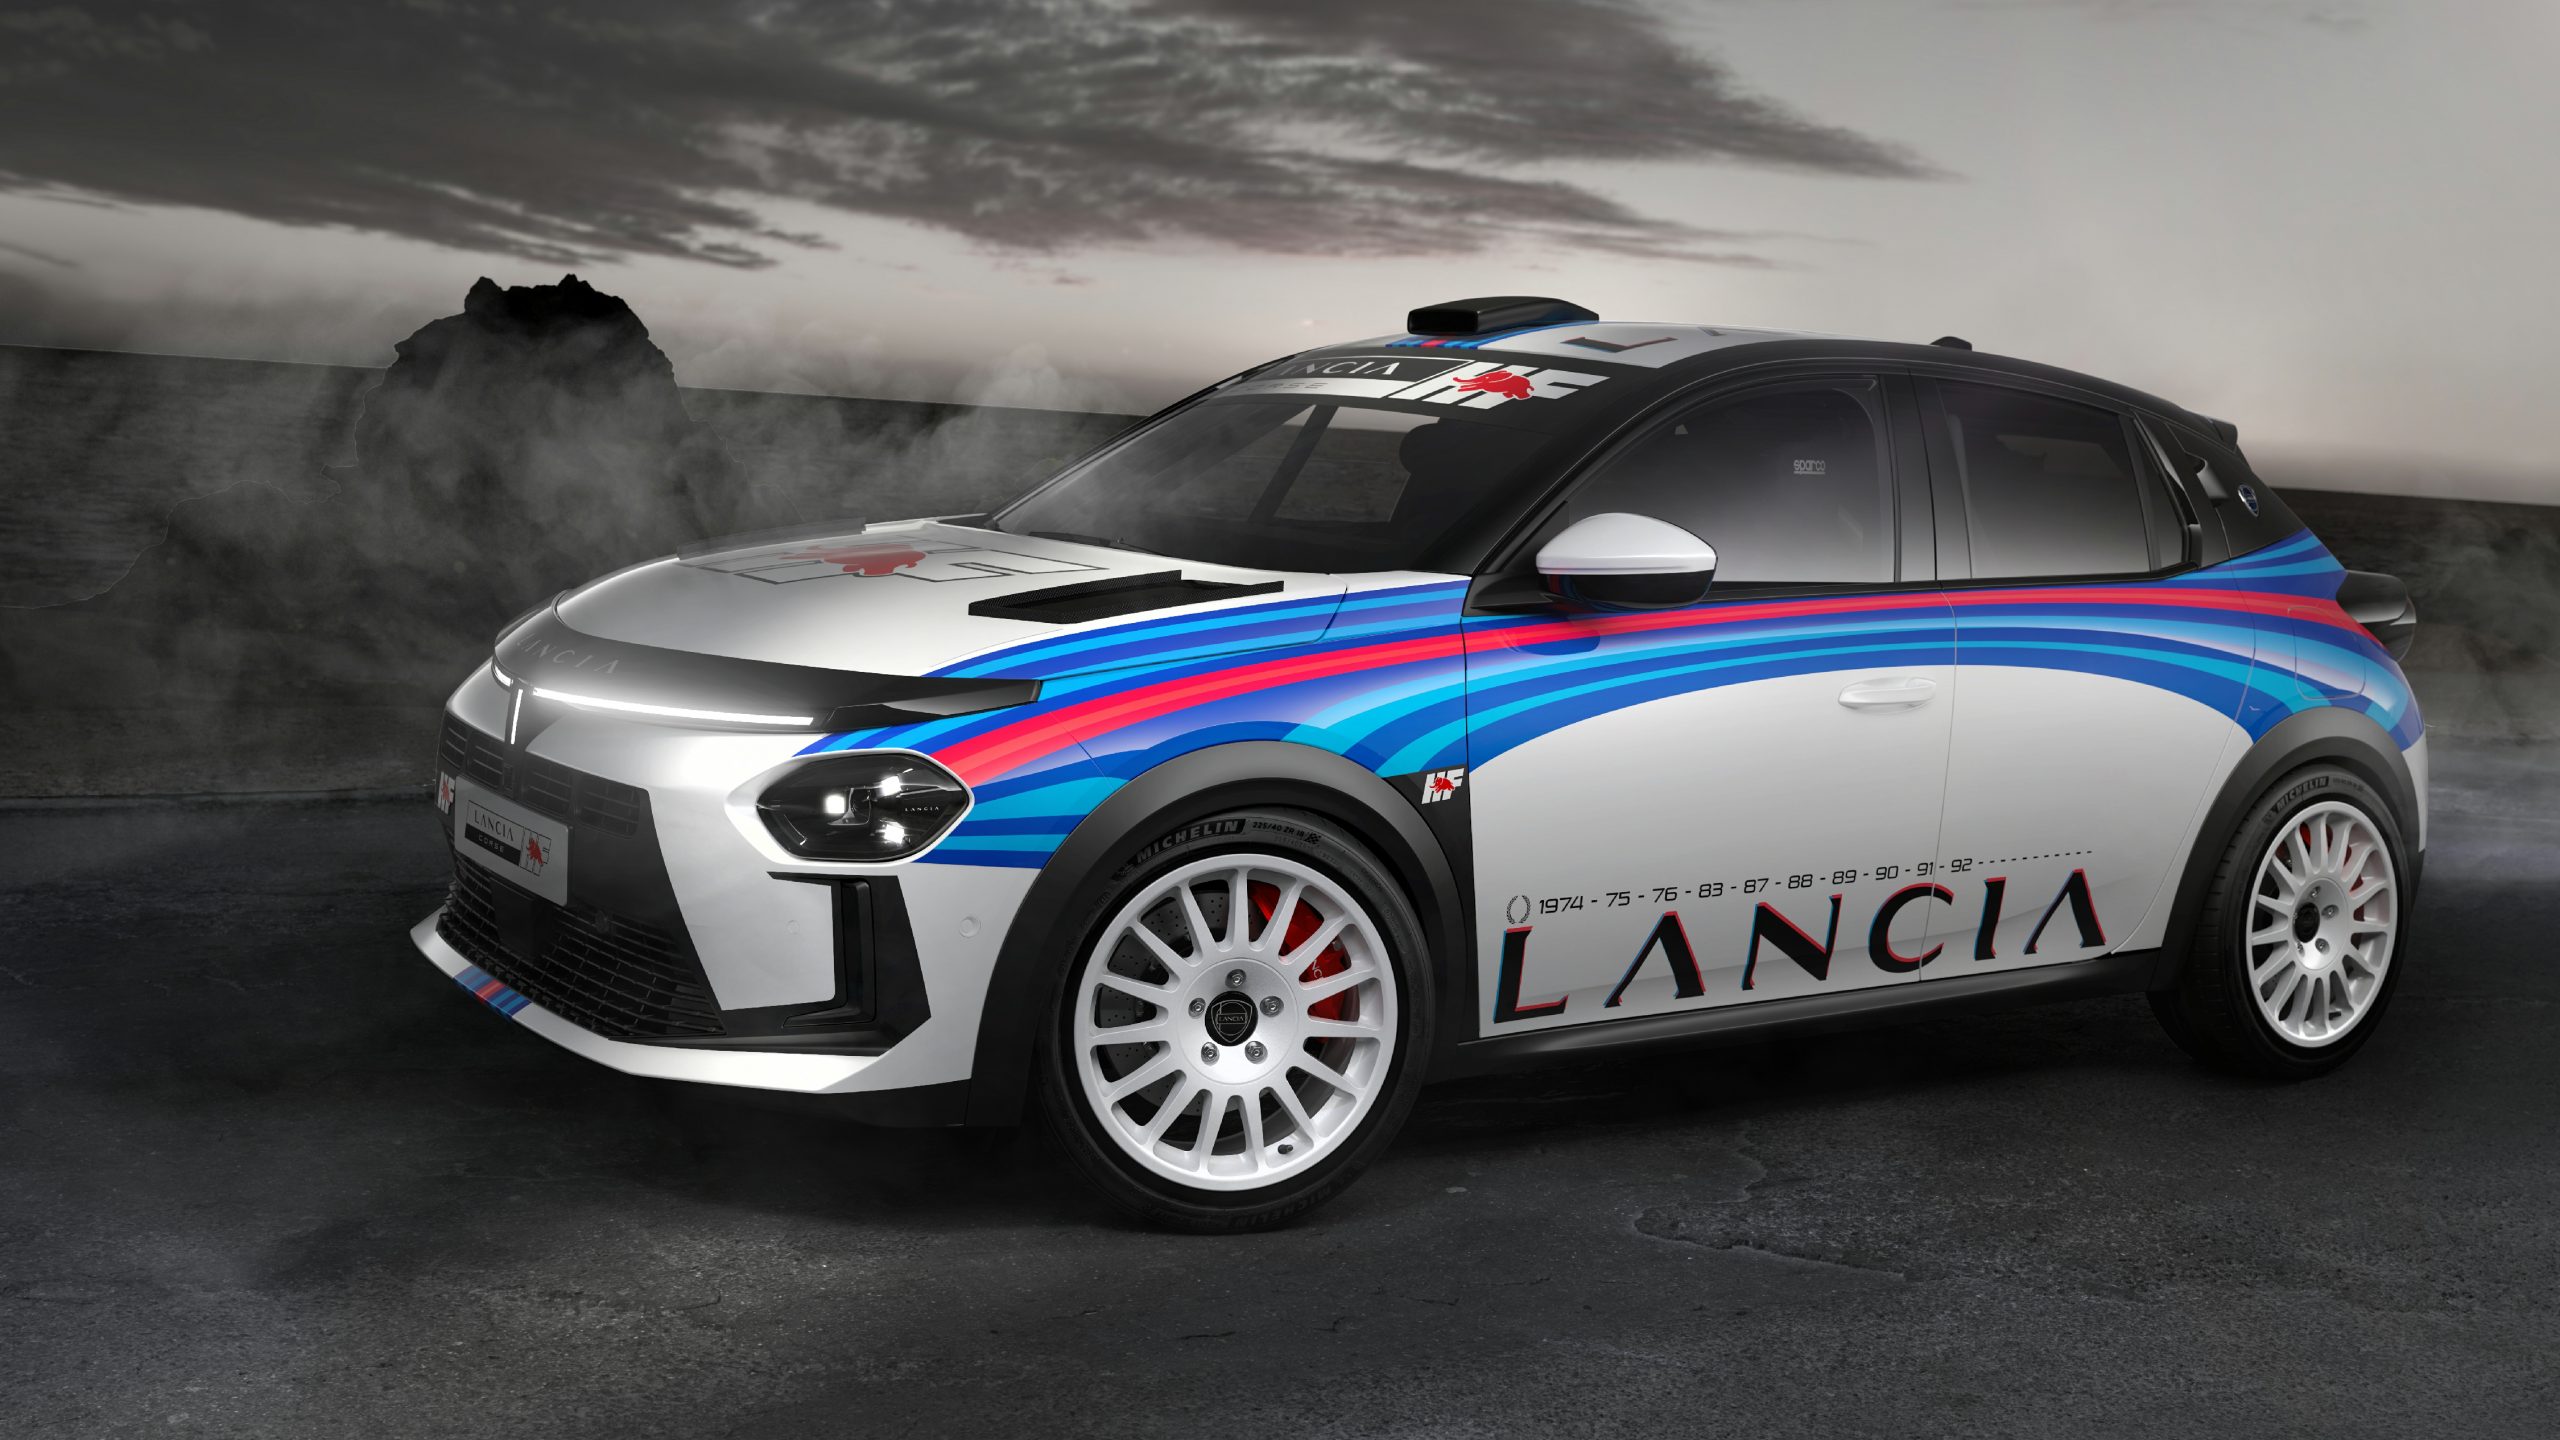 ¡Están de vuelta! Lancia hace oficial el regreso a los rallyes con el Ypsilon Rally4 HF